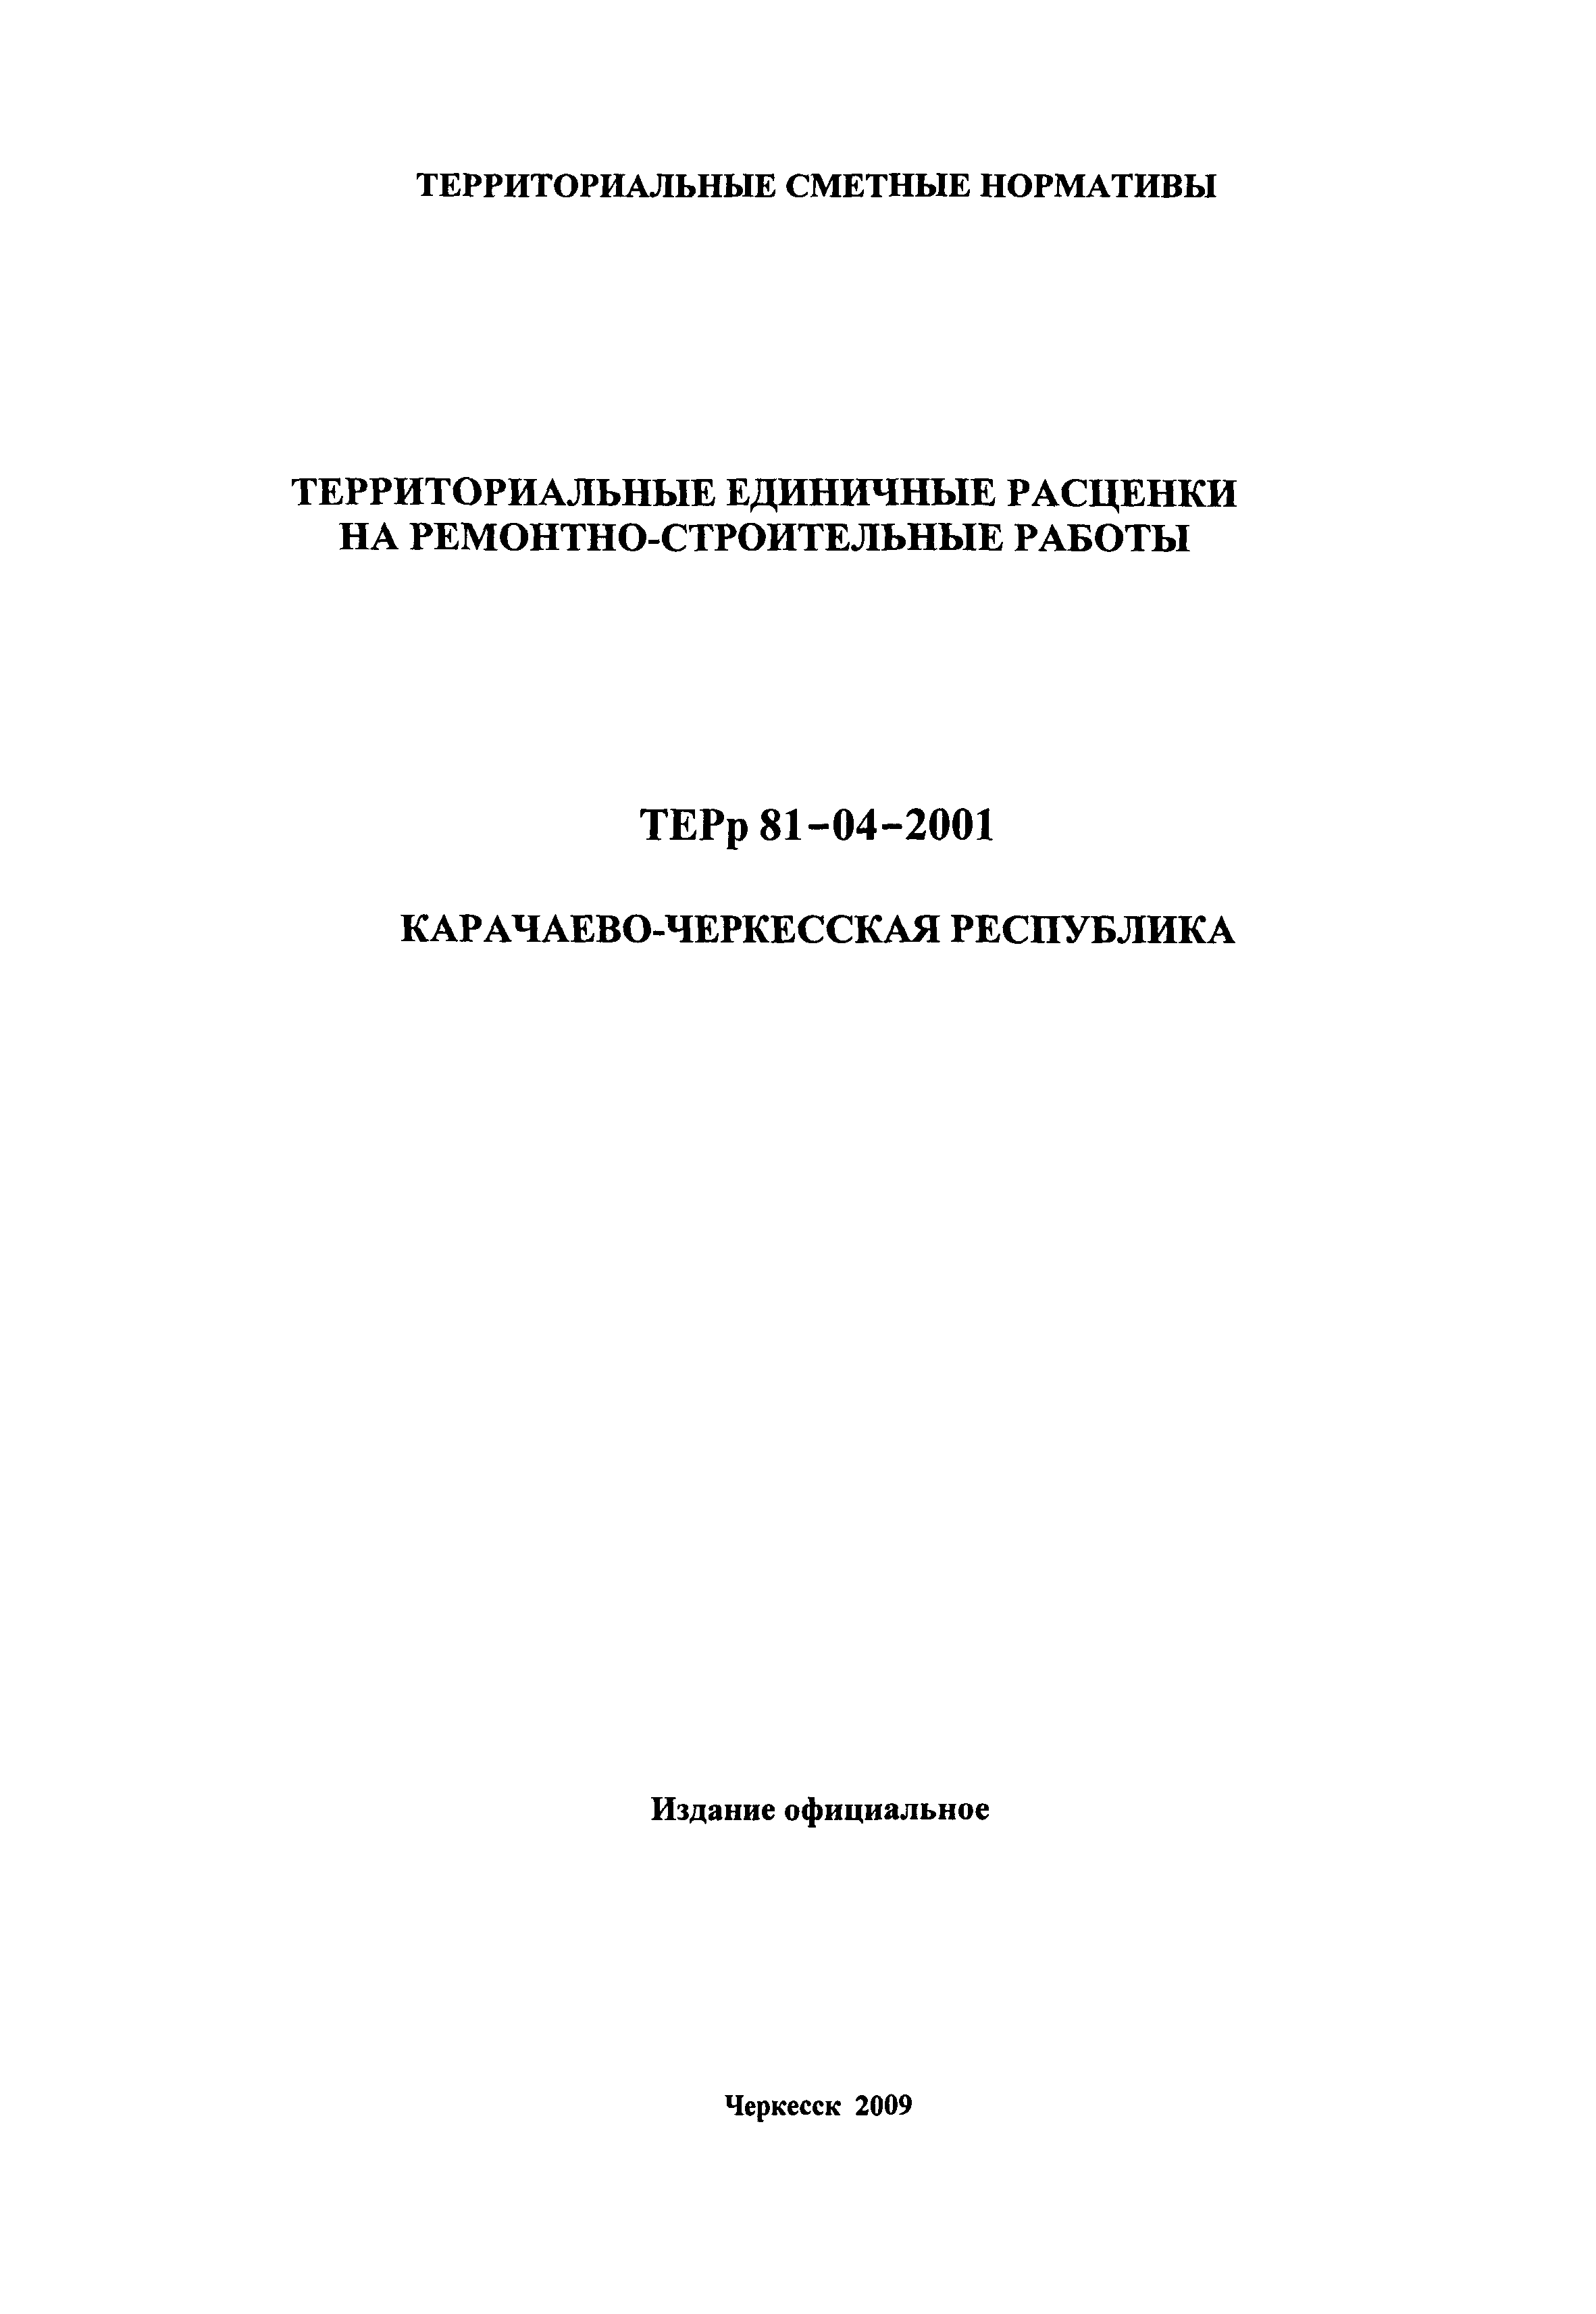 ТЕРр Карачаево-Черкесская Республика 2001-60